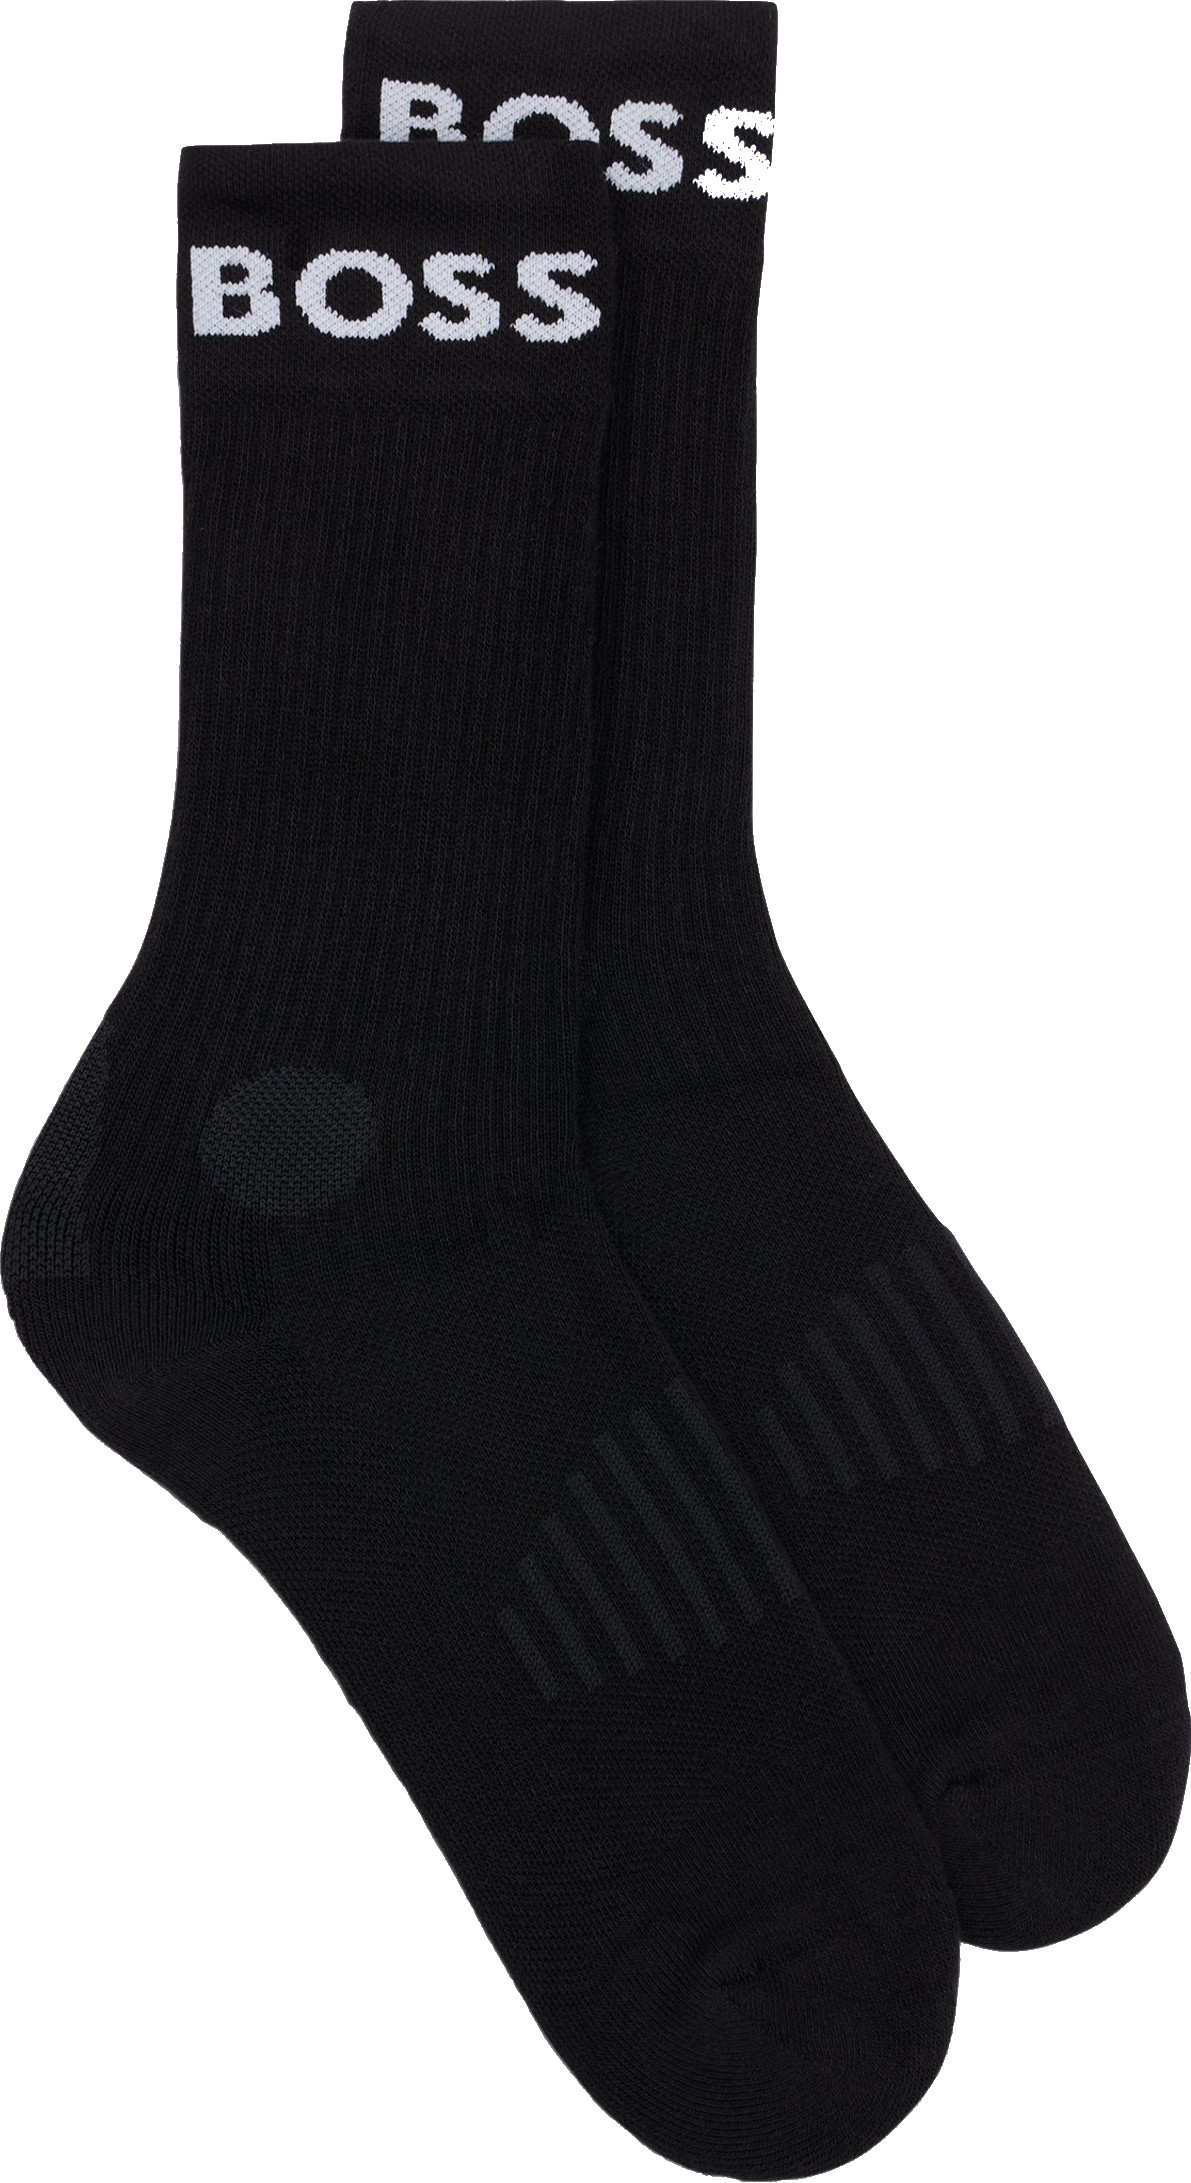 Hugo Boss 2 PACK - pánské ponožky BOSS 50469747-001 39-42